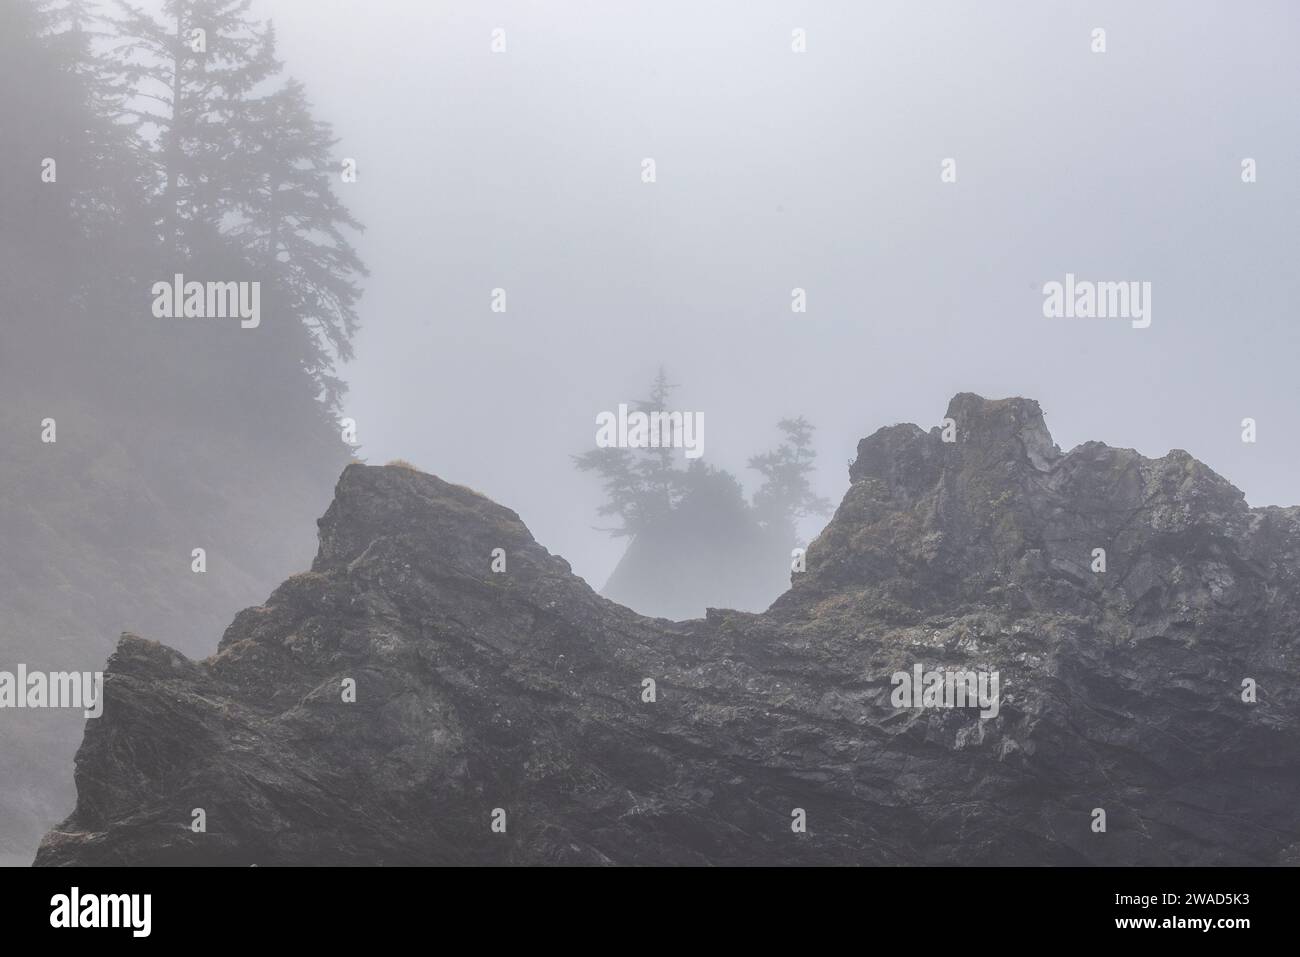 États-Unis, Oregon, Brookings, côte rocheuse par jour brumeux Banque D'Images